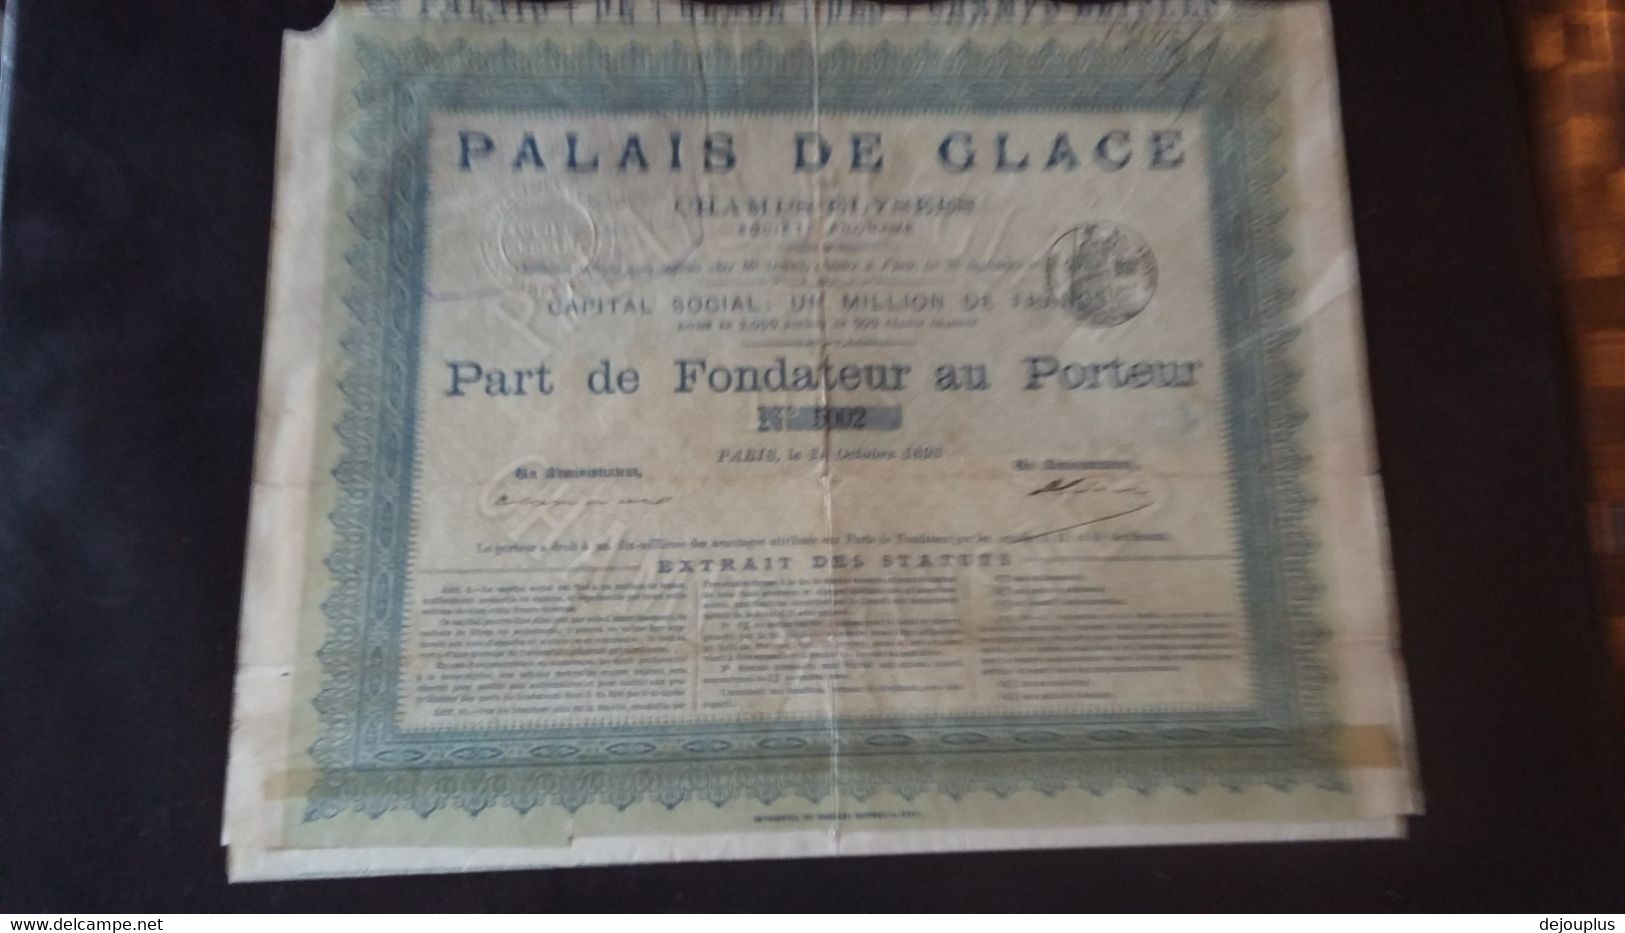 ACTION   PART  FONDATEUR  AU  PORTEUR   PALAIS  DE  GLACE  1893 - Sport